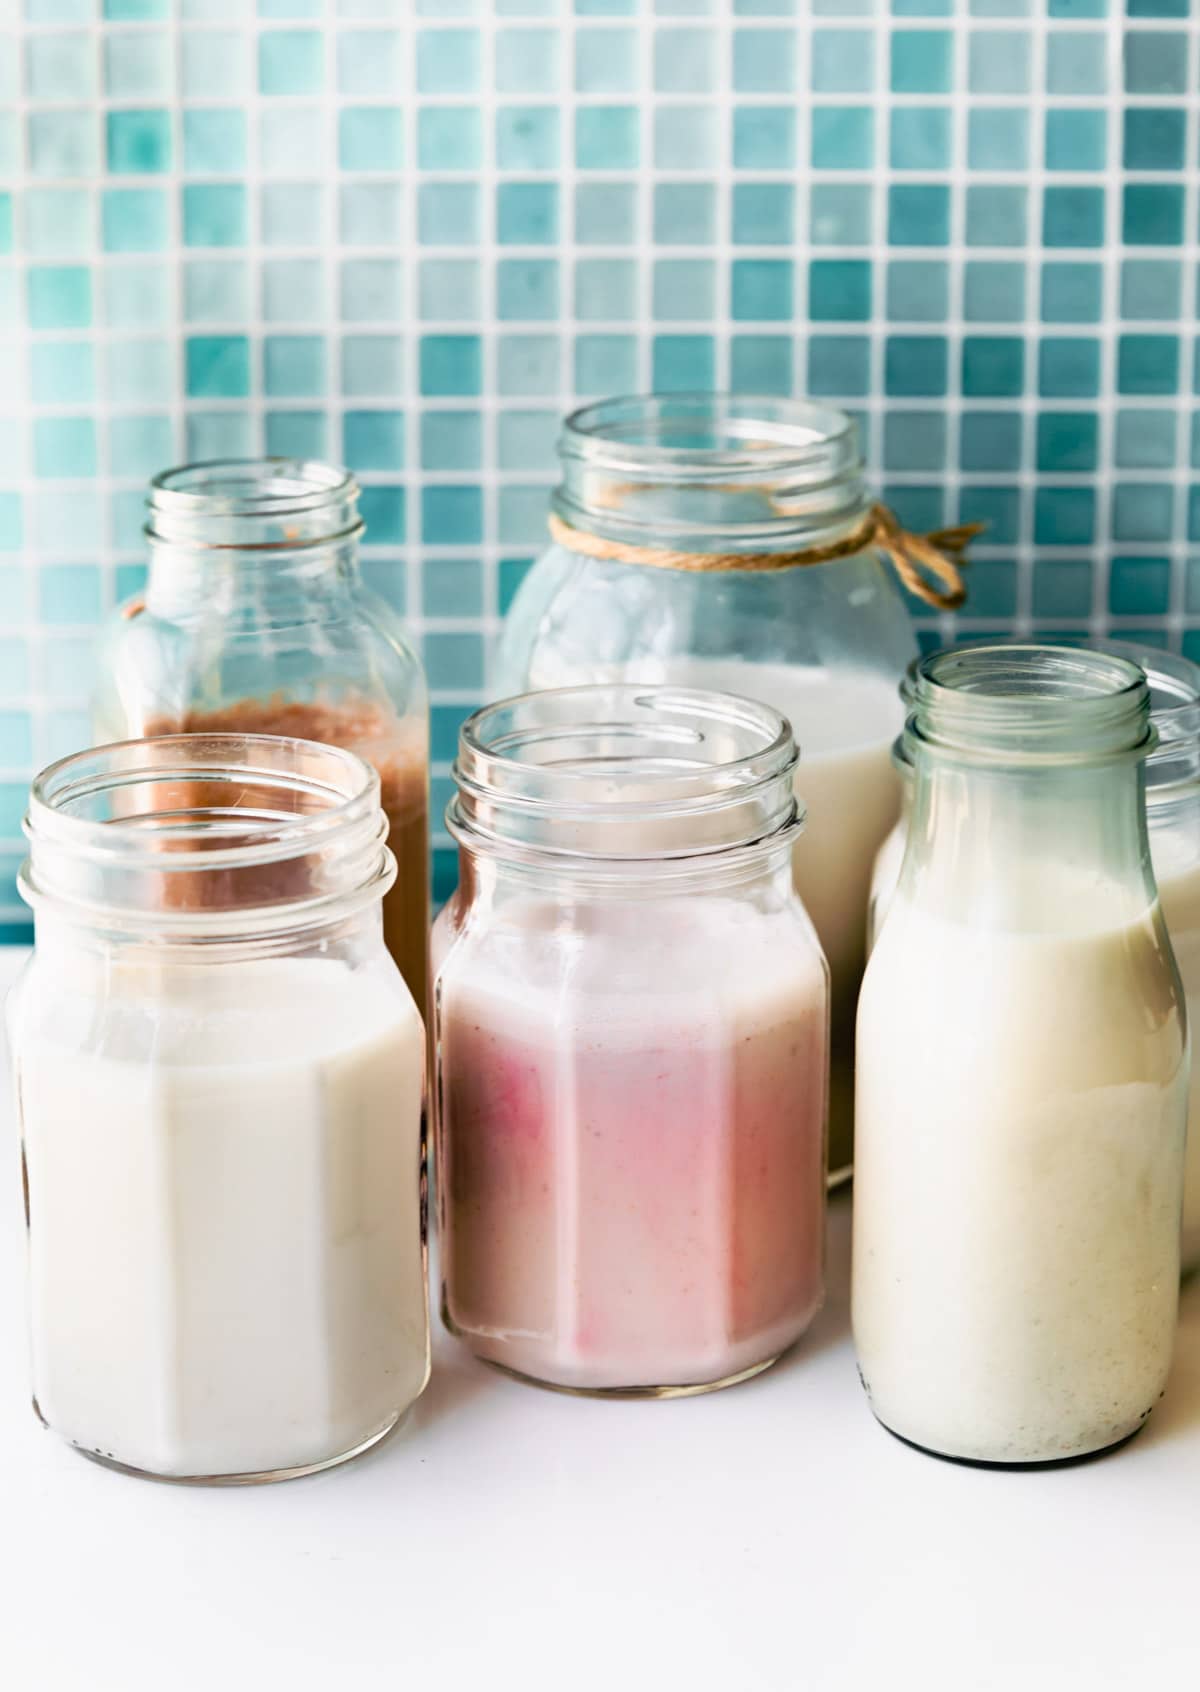 Side image of homemade dairy-free milks in milk jars.